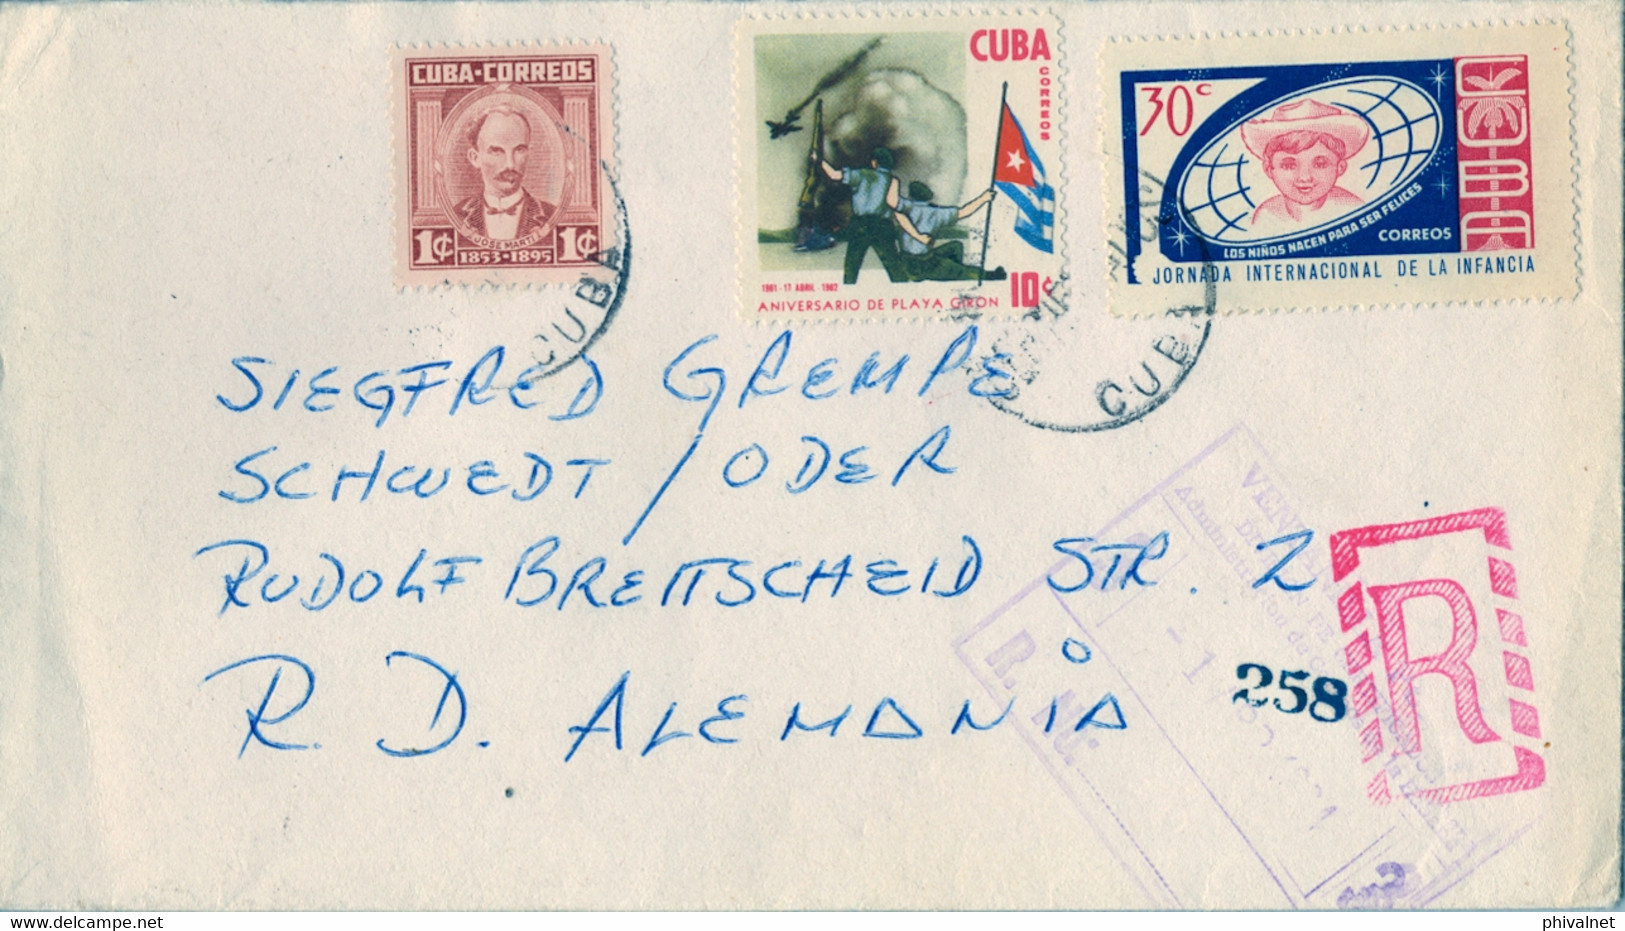 1964 CUBA , SOBRE CERTIFICADO , VENTANILLA PÚBLICA LA HABANA - SCHWEDT ODER , INFANCIA , ANIV. PLAYA GIRÓN - Covers & Documents